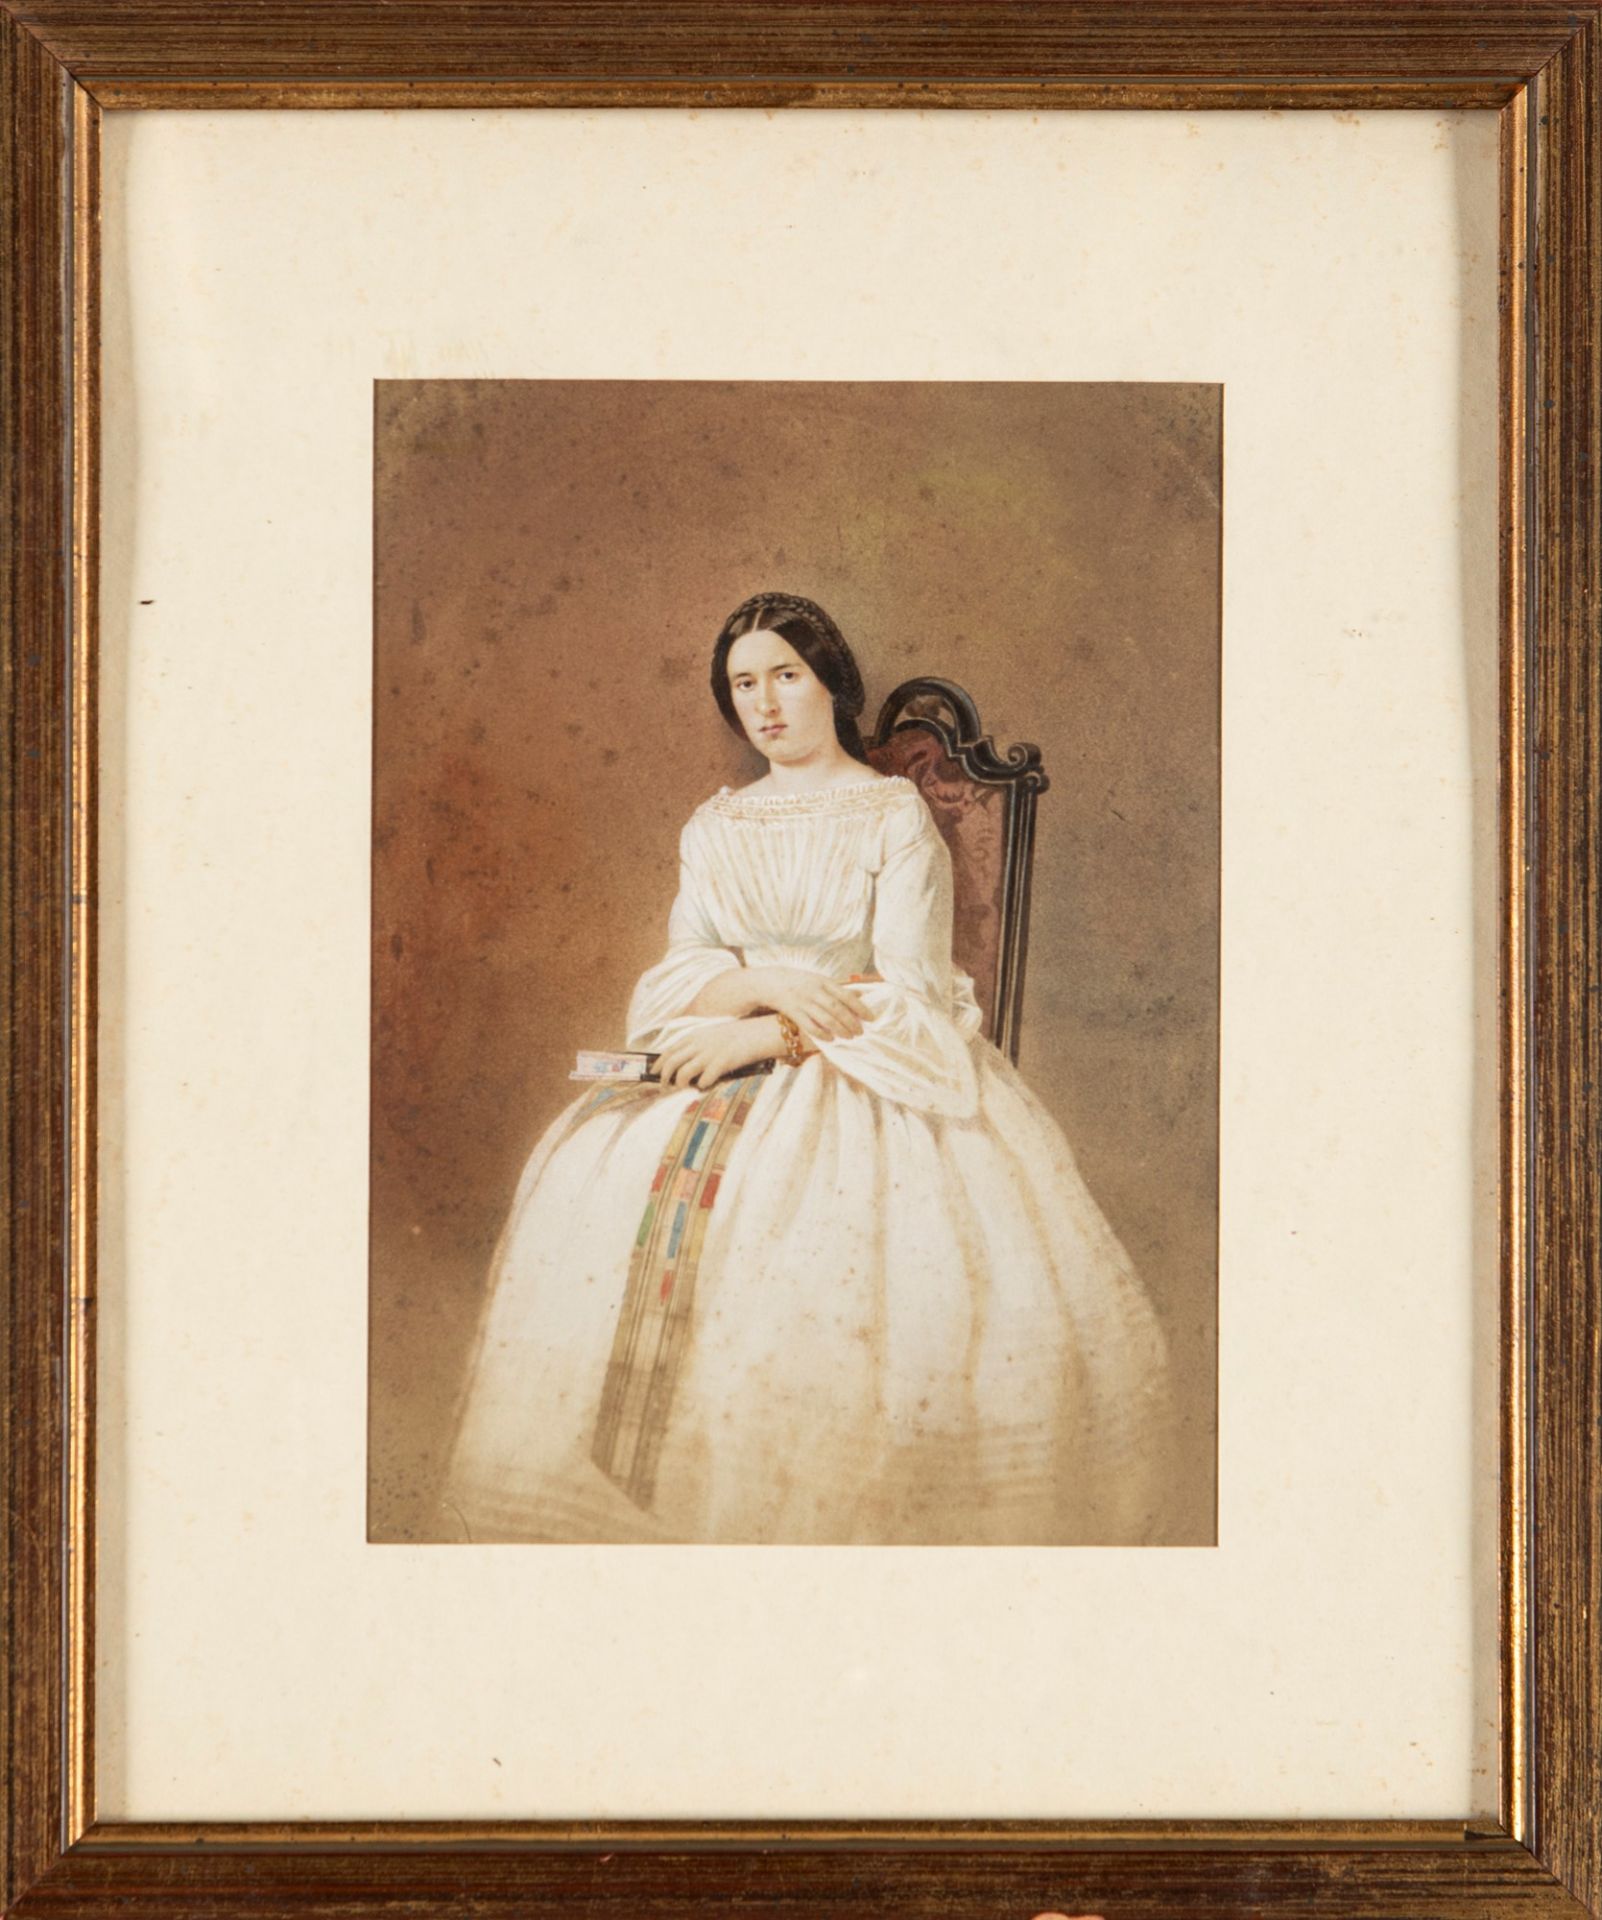 Scuola del secolo XIX - Female portrait - Image 2 of 3